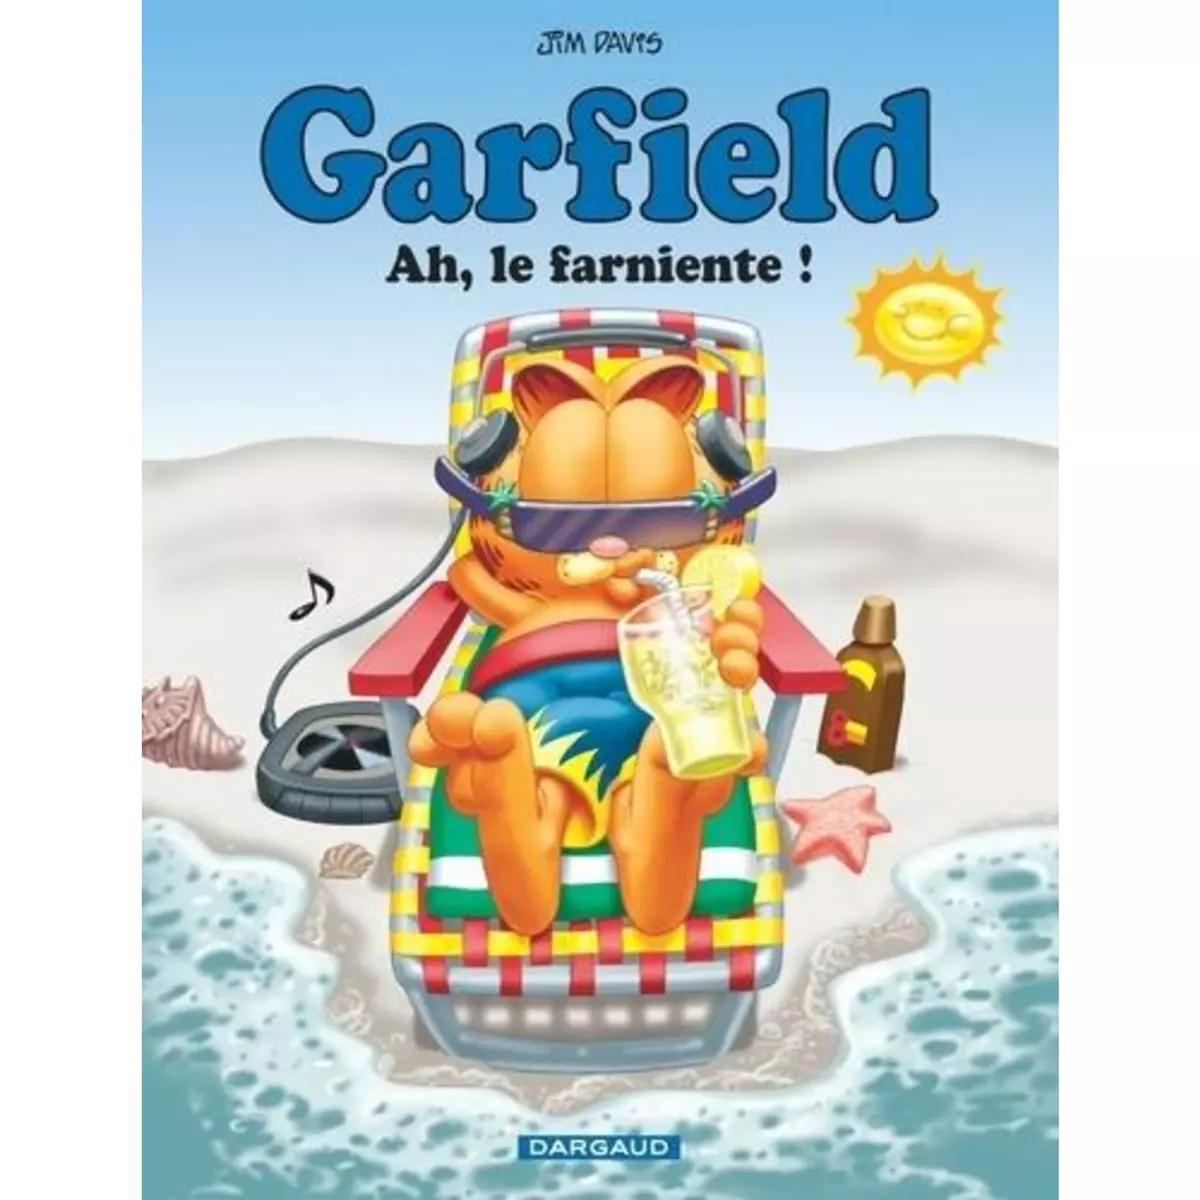  GARFIELD TOME 11 : AH, LE FARNIENTE !, Davis Jim